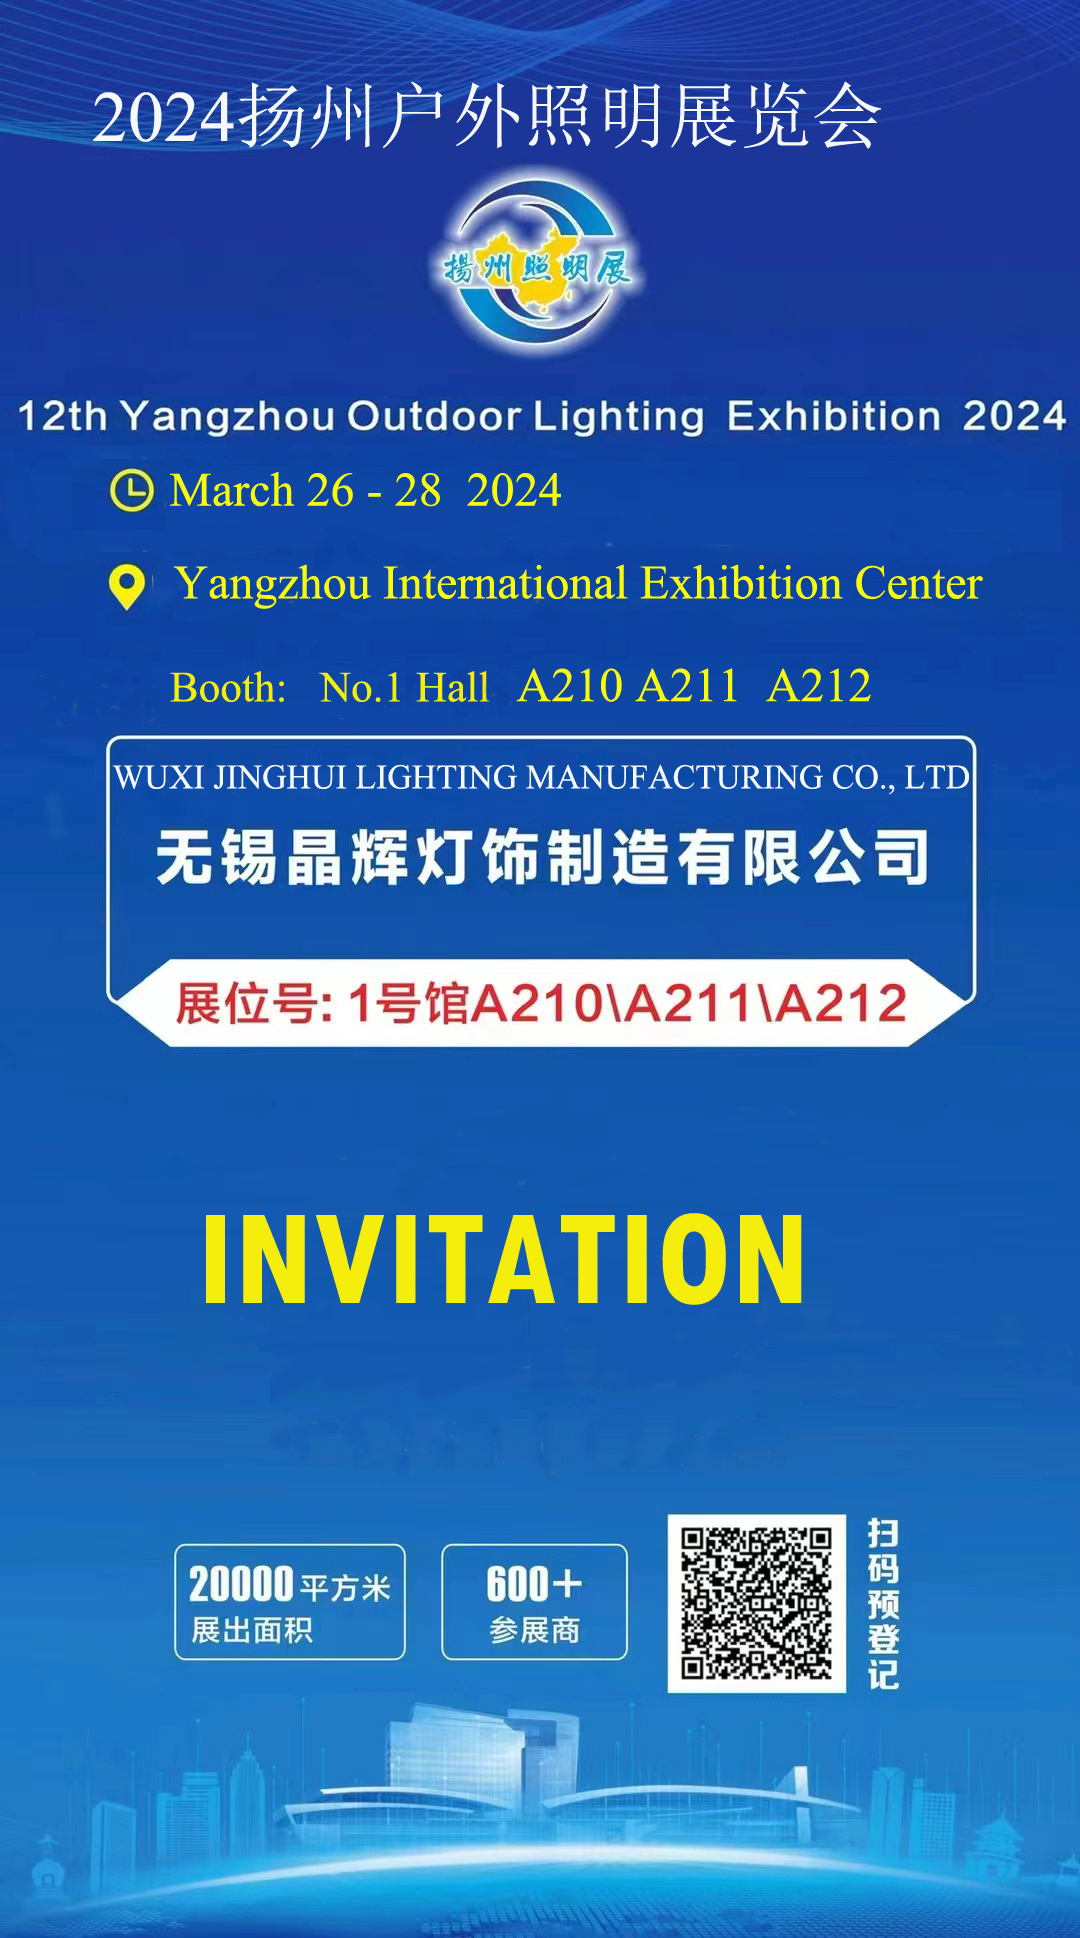 2024 12. výstava vonkajšieho osvetlenia v Číne (Yangzhou).